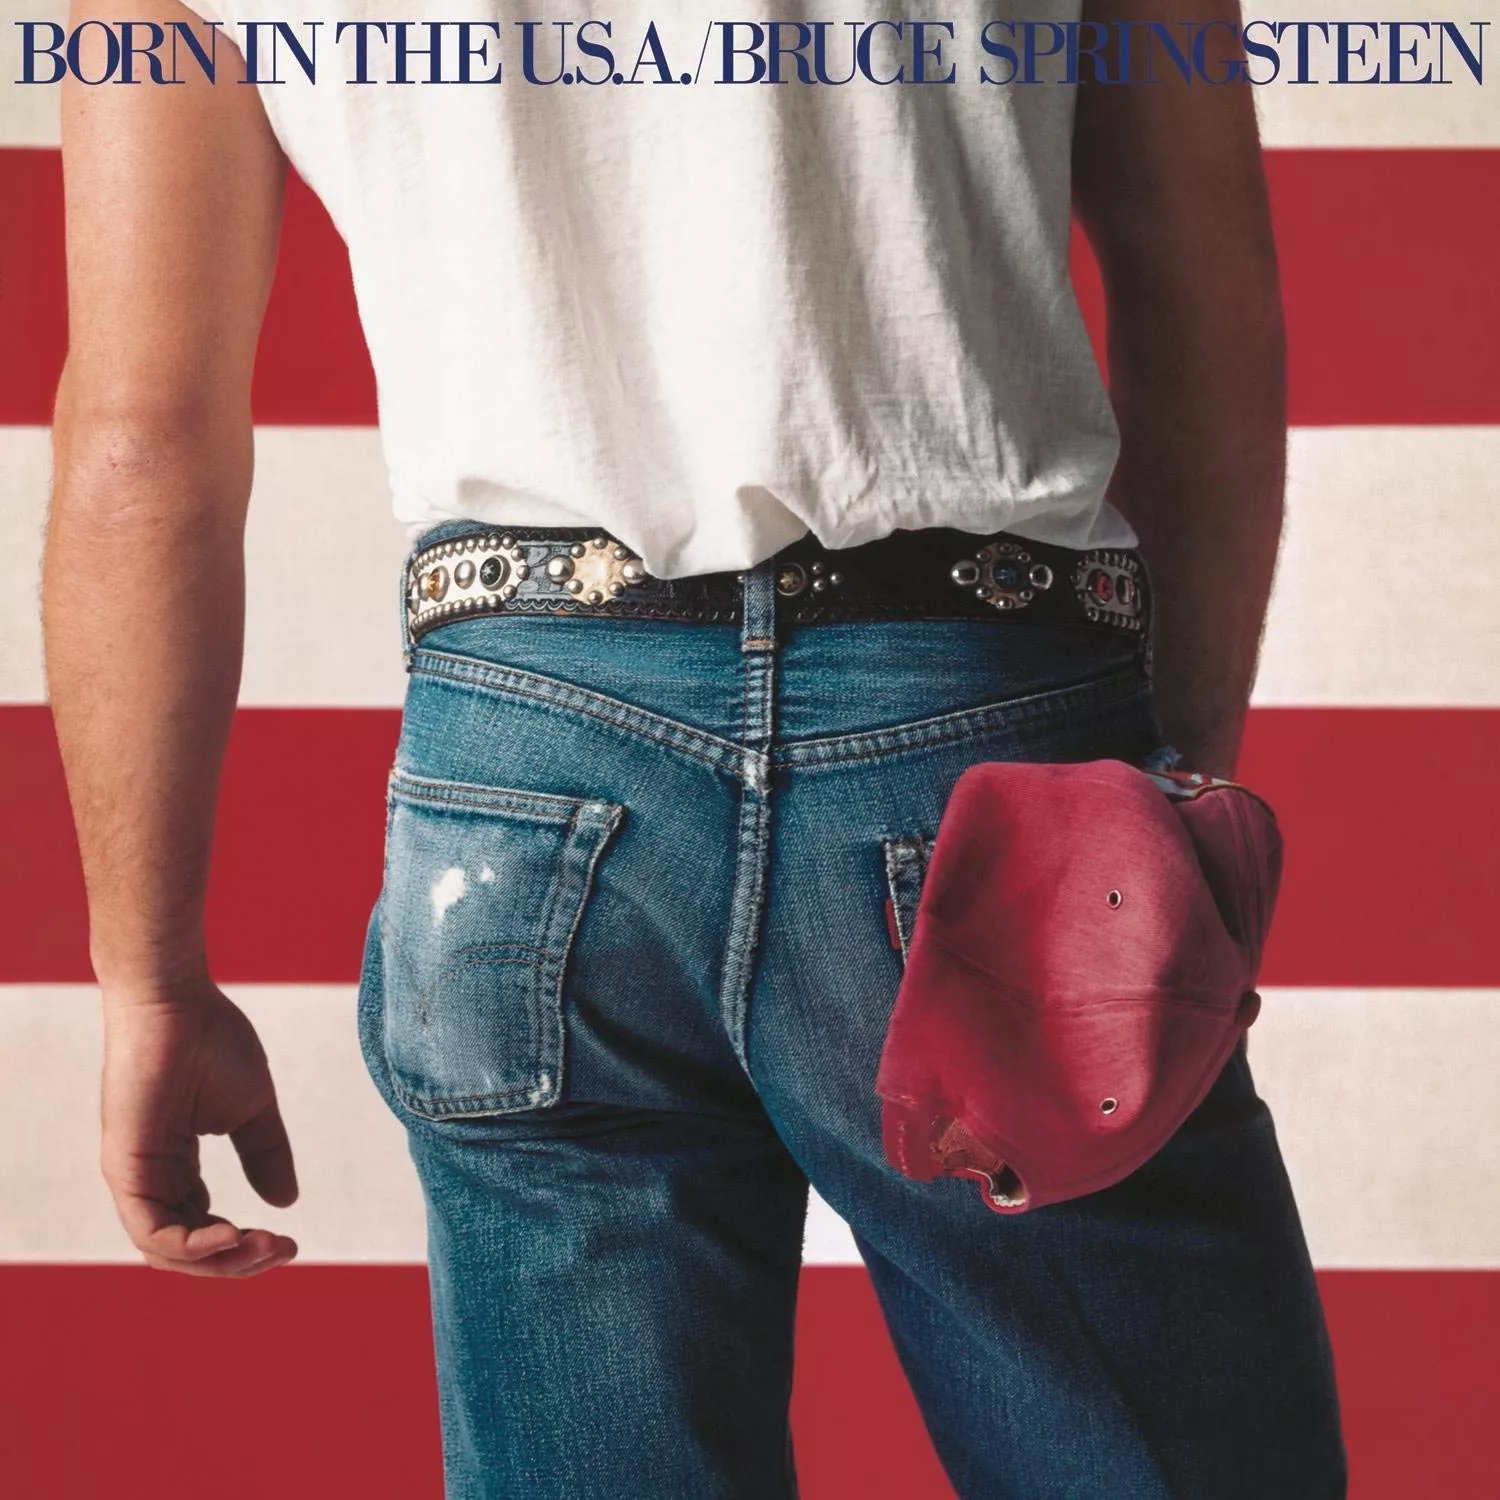 LÆSER-AFSTEMNING: Her er Springsteens bedste album